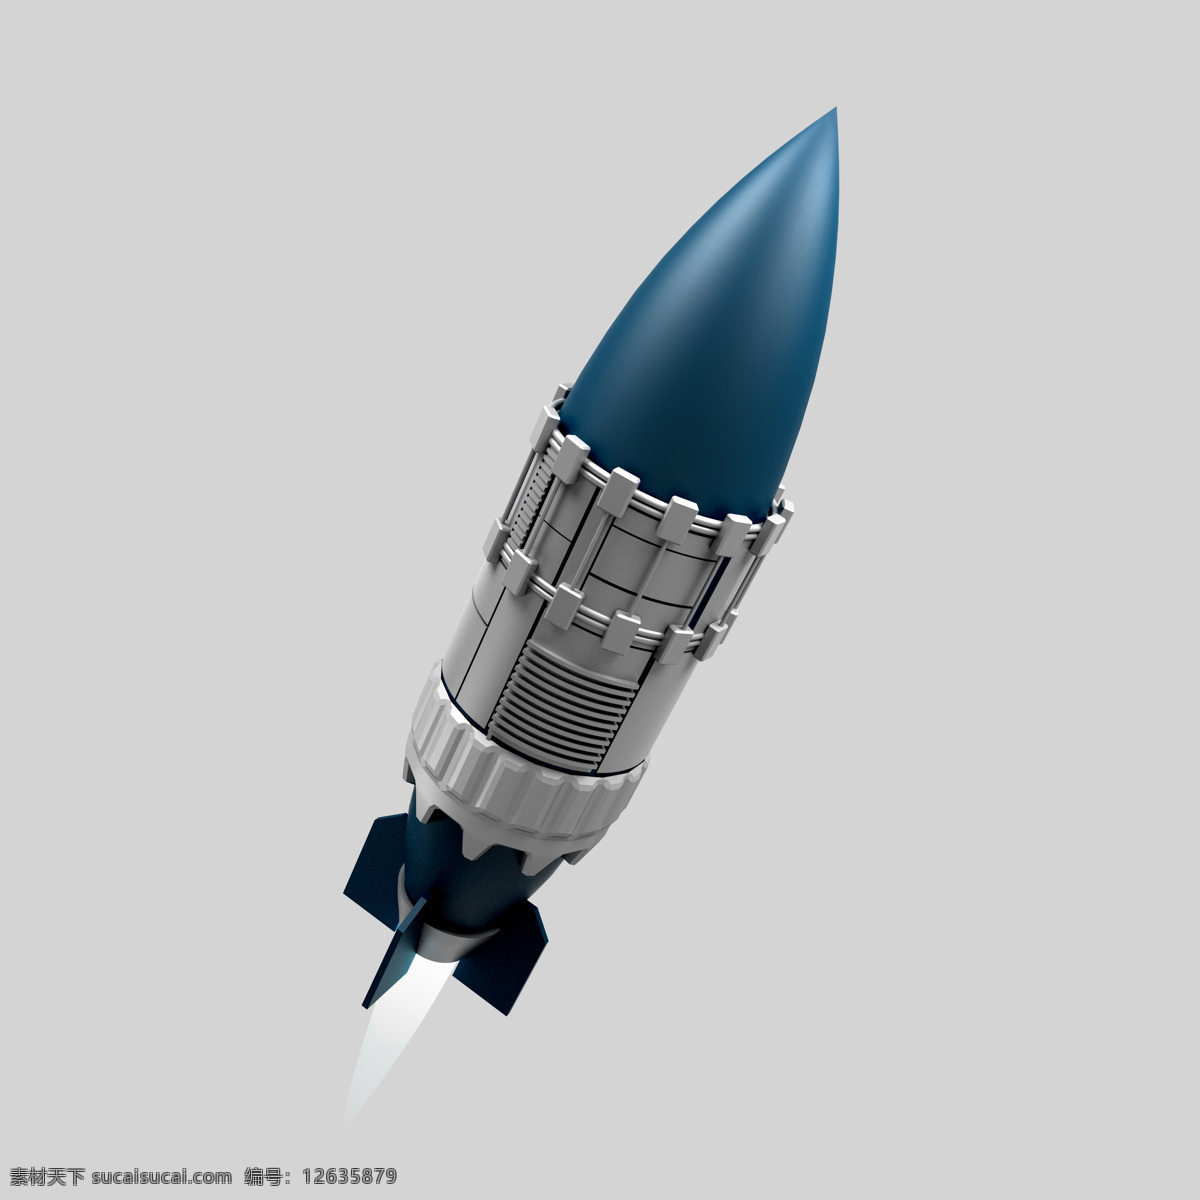 精确 制导 弹药 炸弹 精确导航 航天科技 宇宙太空 环境家居